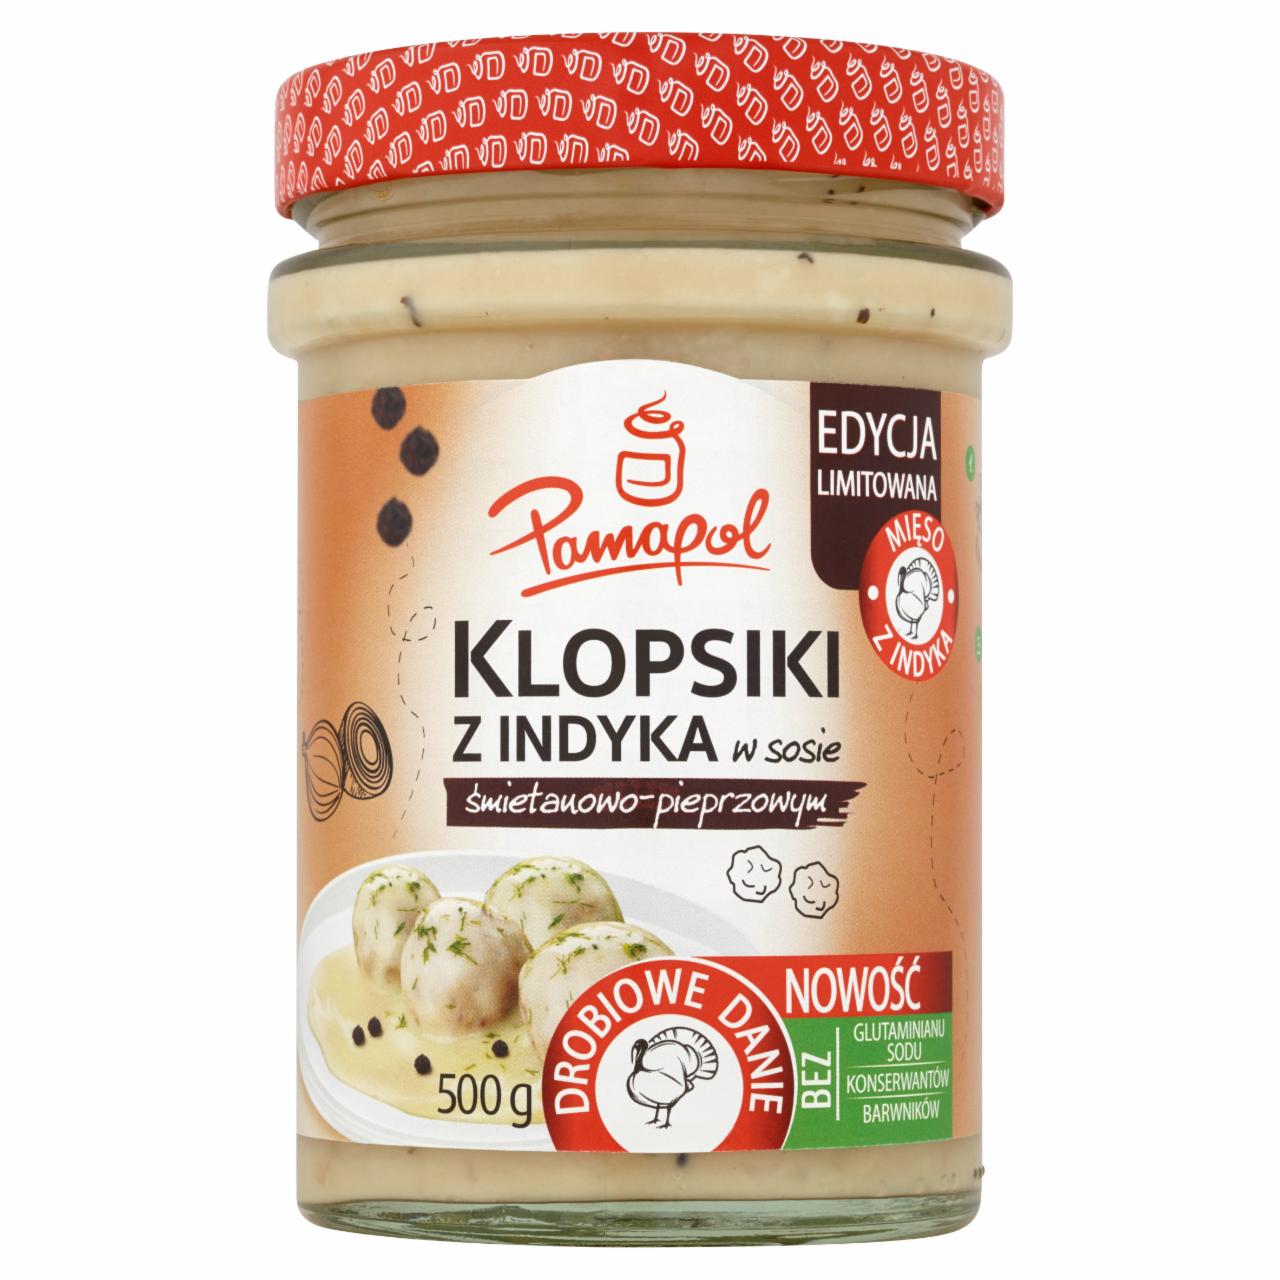 Zdjęcia - Pamapol Klopsiki z indyka w sosie śmietanowo-pieprzowym 500 g